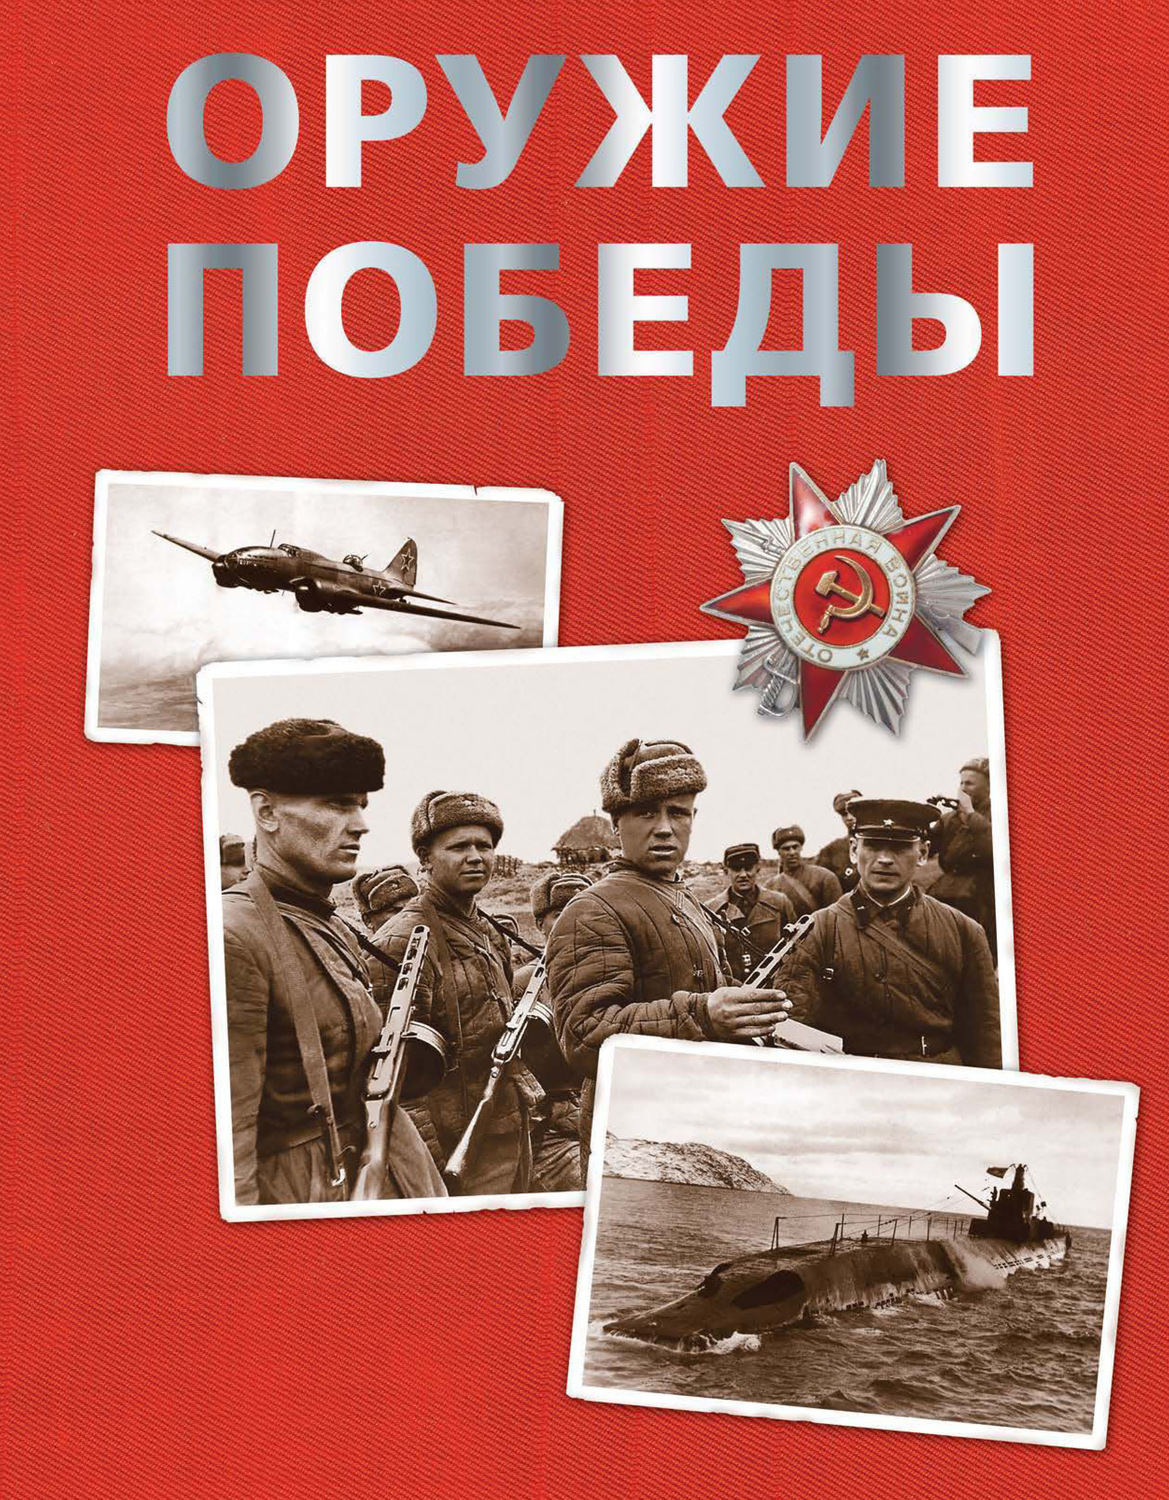 Книга Бакурский оружие Победы